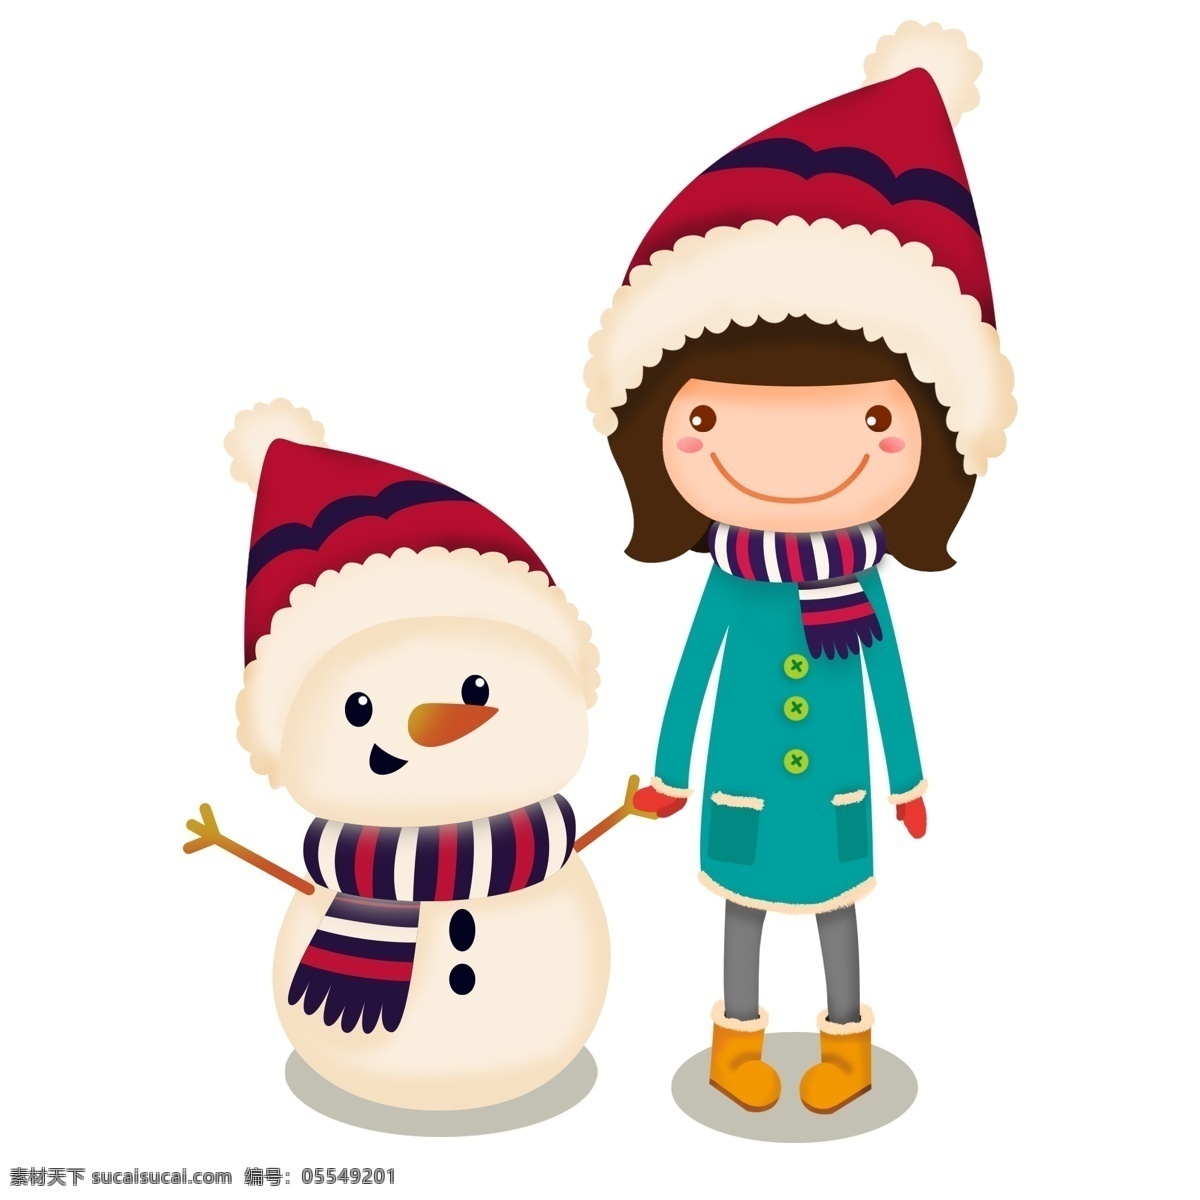 可爱 卡通 女孩儿 雪人 冬季 插画 好朋友 手绘素材 可爱女孩 圣诞服装 小清新 冬季物语 玩耍